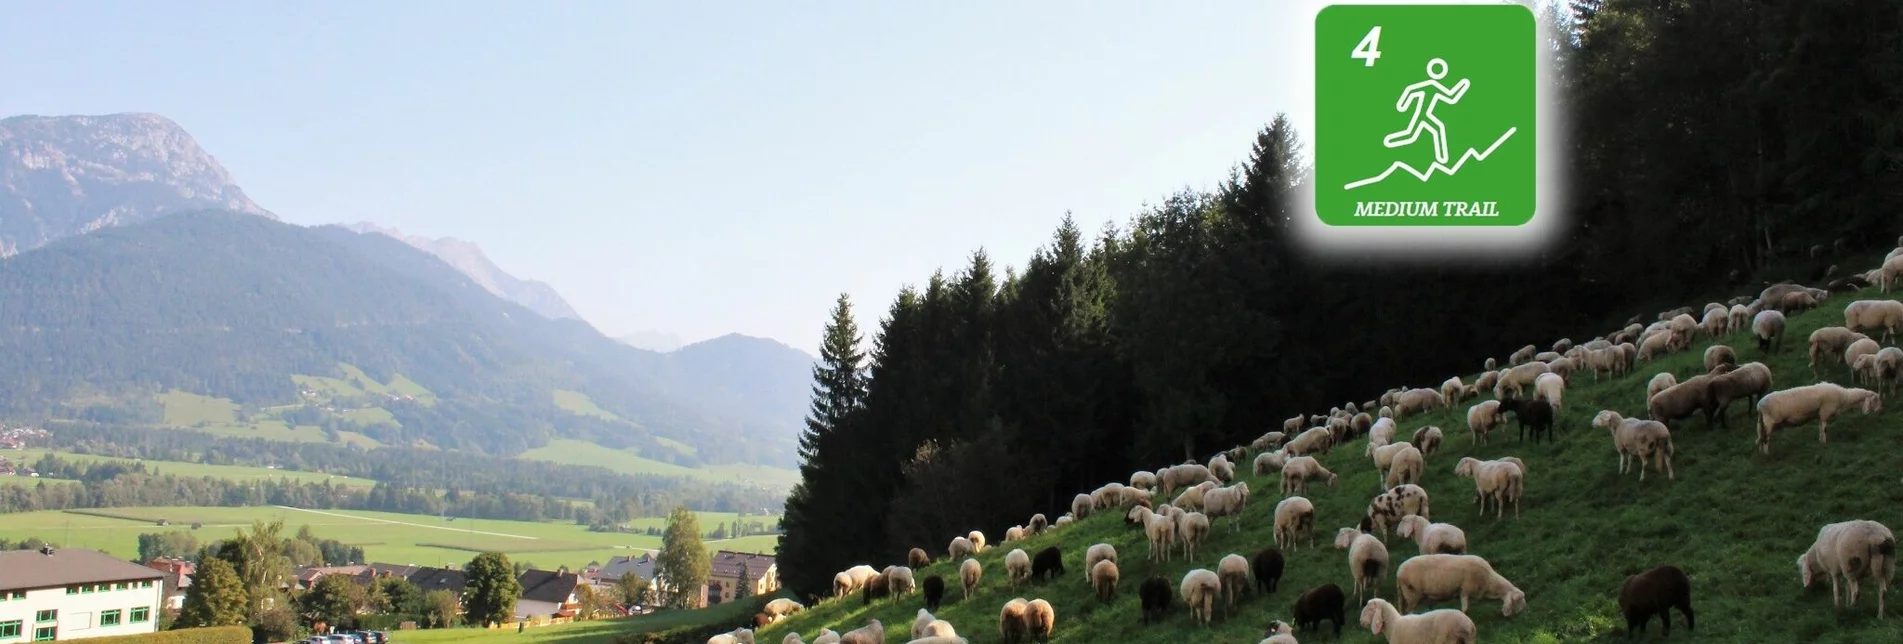 Trailrunning Gumpenberg Trail (Nr. 4) - Touren-Impression #1 | © Erlebnisregion Schladming-Dachstein